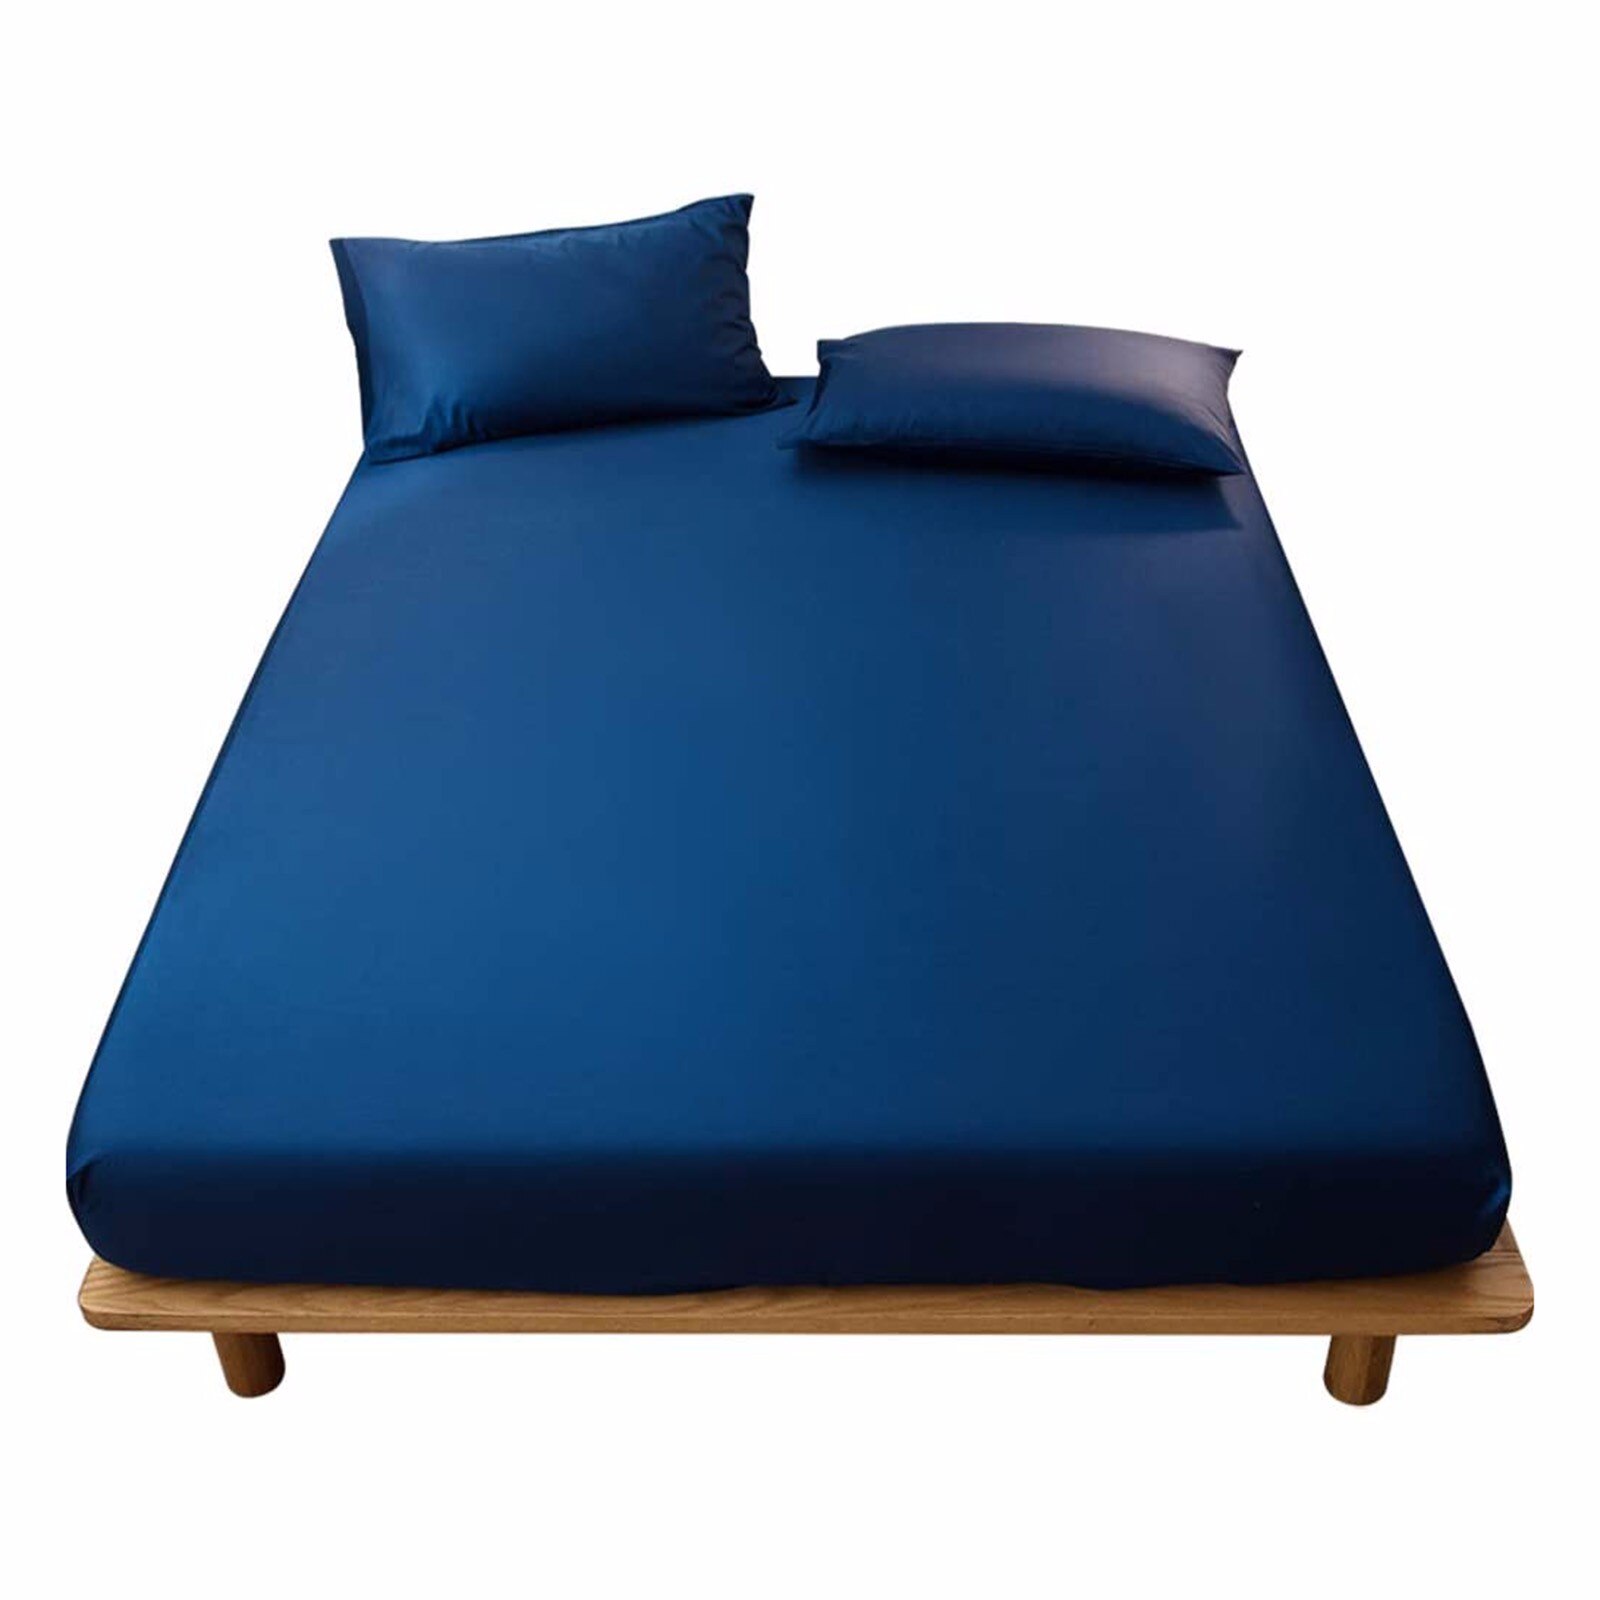 Madrasovertræk i massiv farve slibning sengetøj sengetøj lagner med elastik dobbelt queen size sengetøj 1 stk